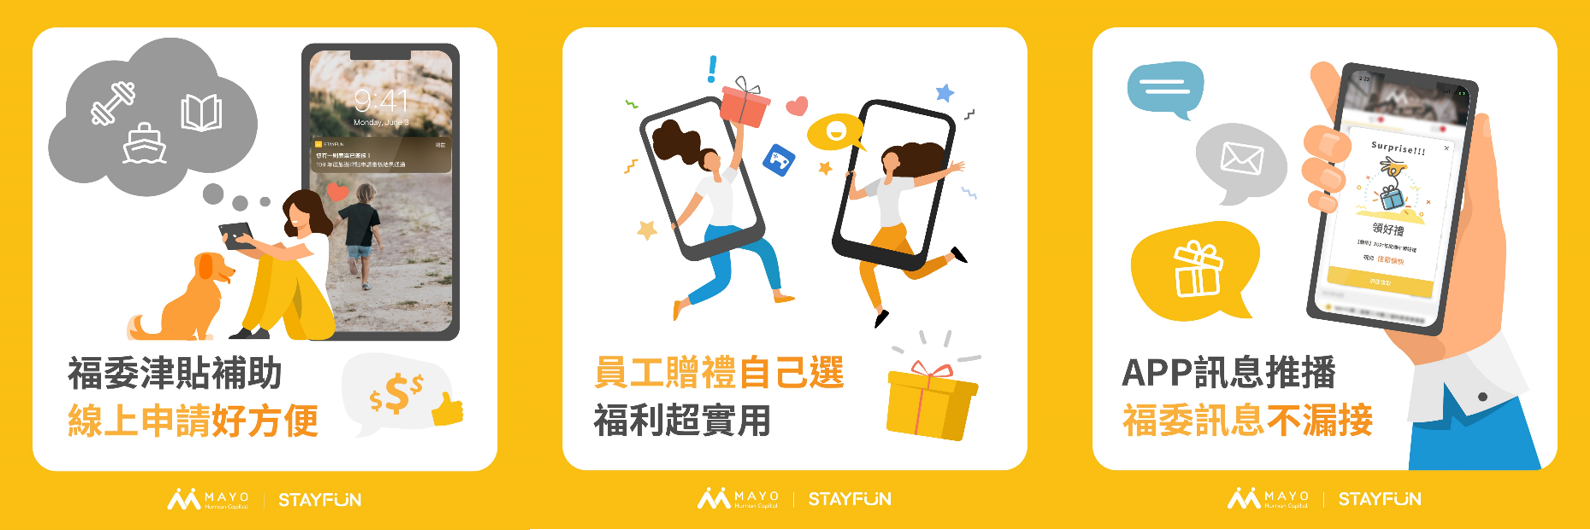 STAYFUN數位福委平台 打造全新員工體驗